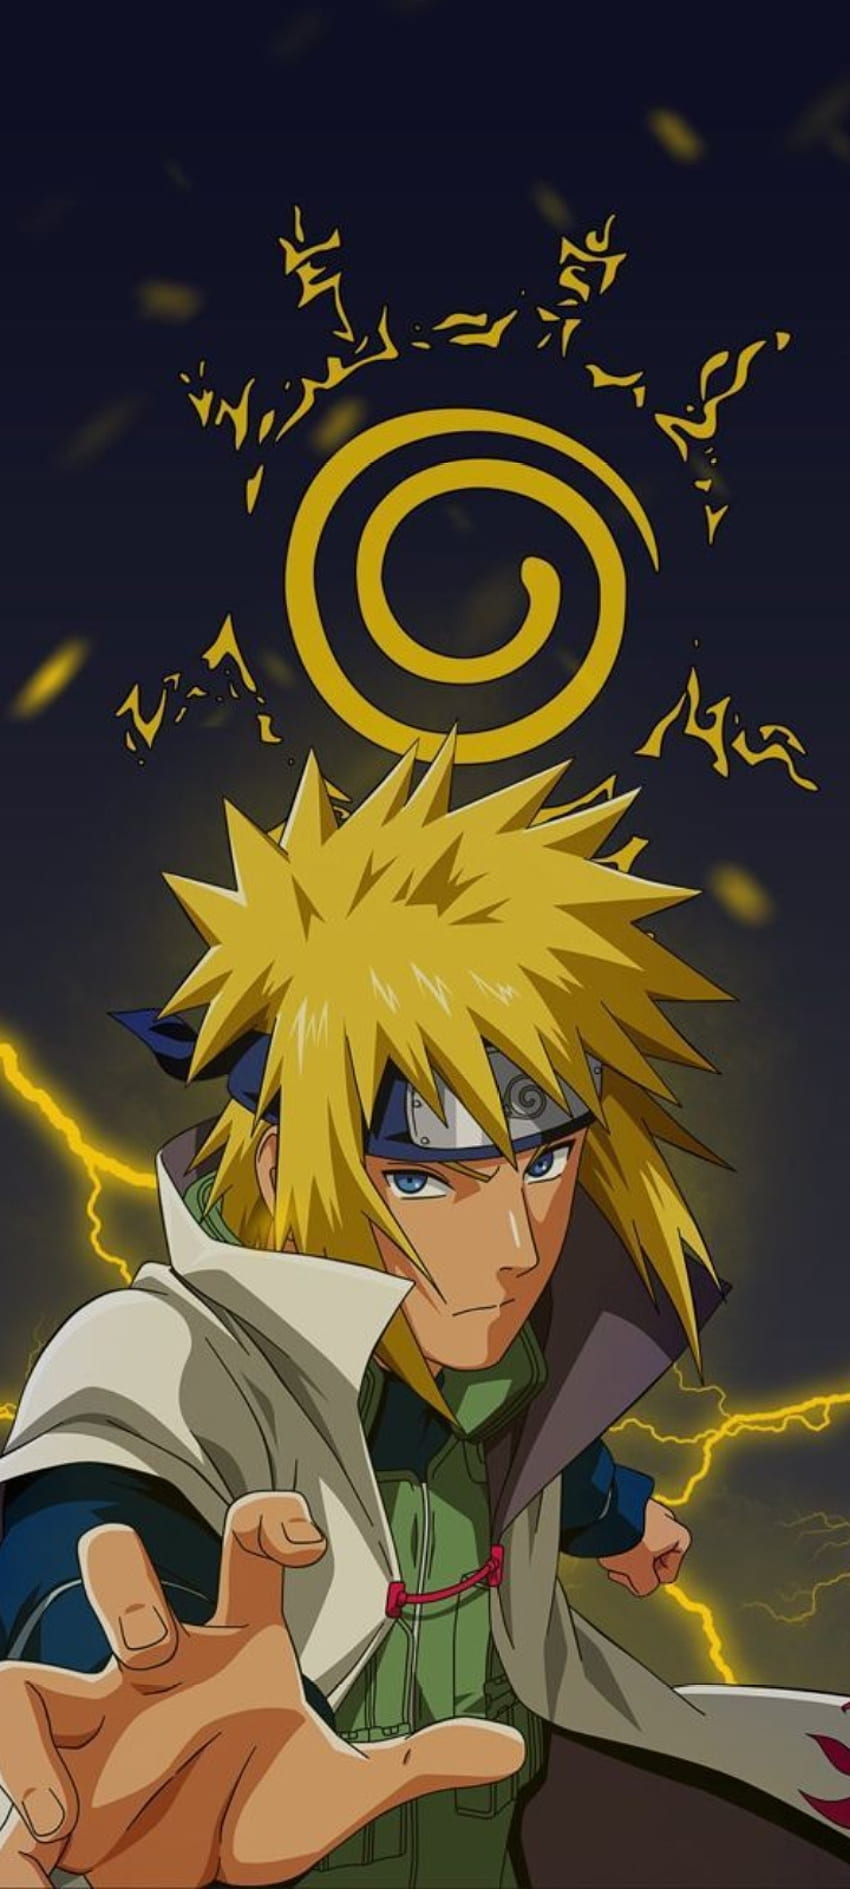 Minato là một trong những nhân vật phổ biến nhất trong câu chuyện Naruto. Nếu bạn yêu thích đấu trường ninja của Naruto với Minato, hãy xem ngay hình ảnh liên quan đến nhân vật này tại đây.